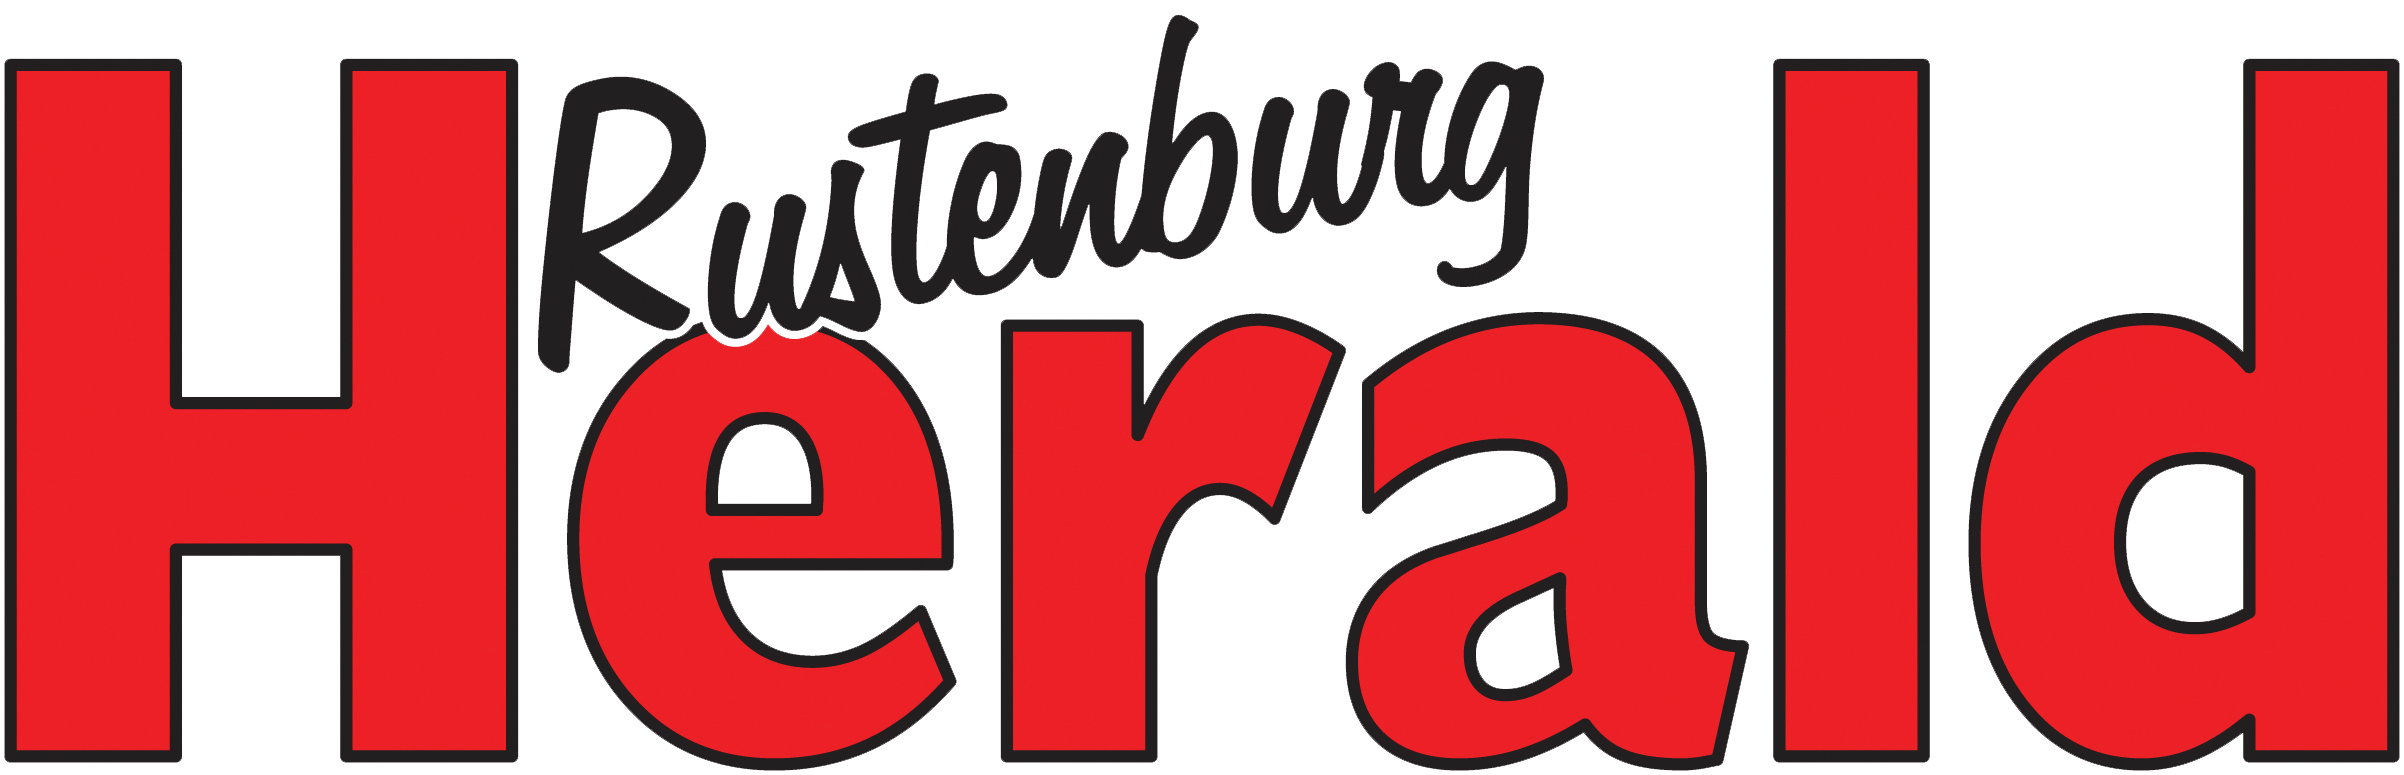 Rustenburg Herald Bonus